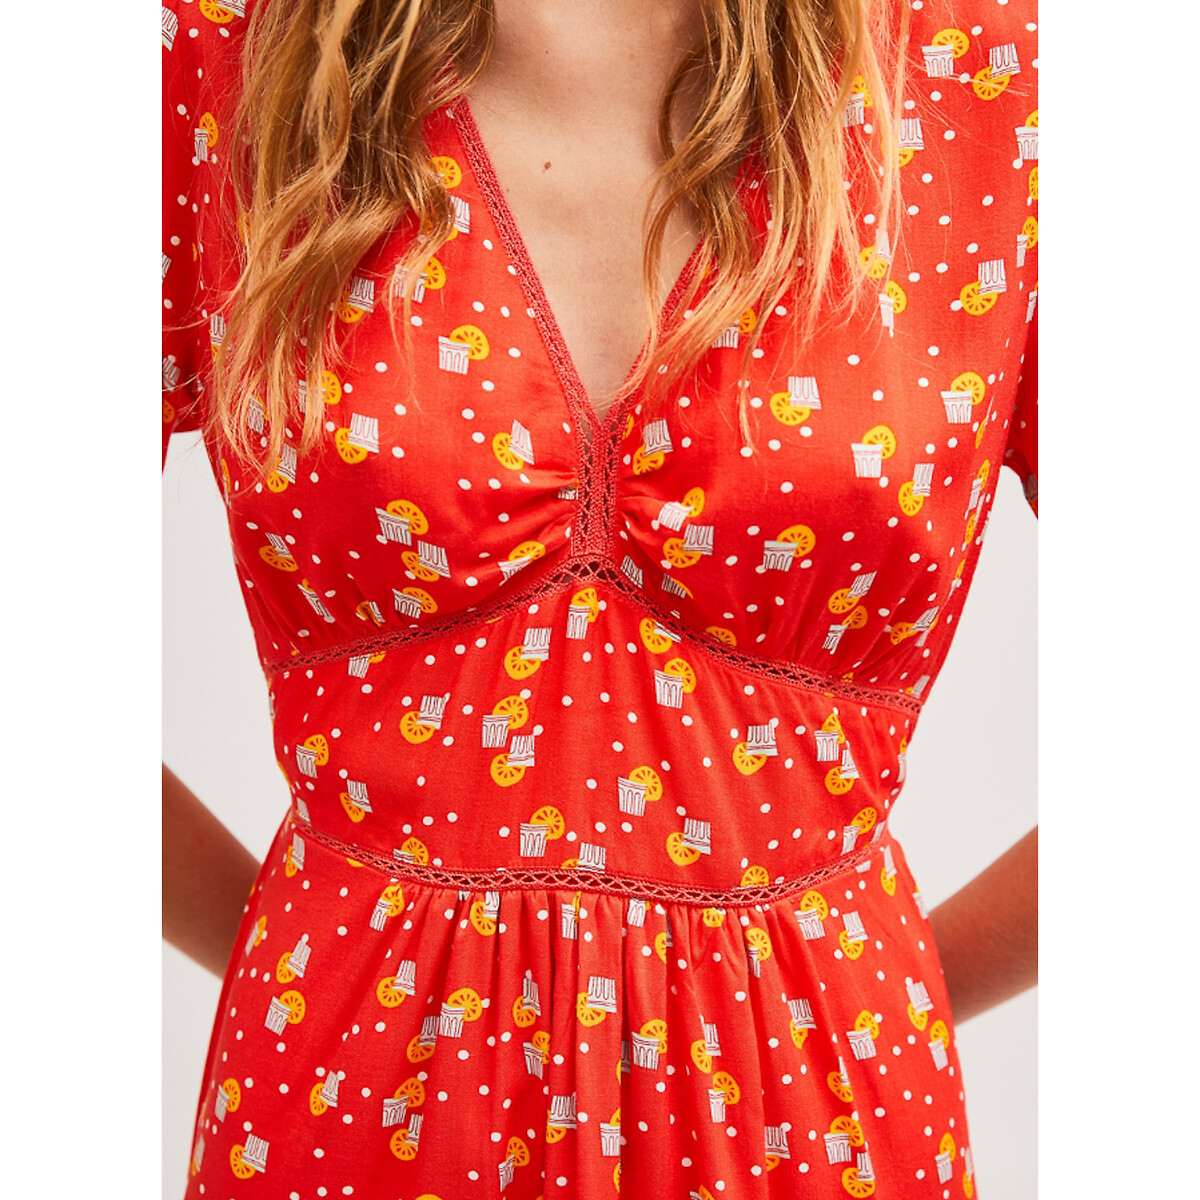 Платье LaRedoute Короткое с V-образным вырезом короткие рукава с принтом L красный, размер L - фото 3